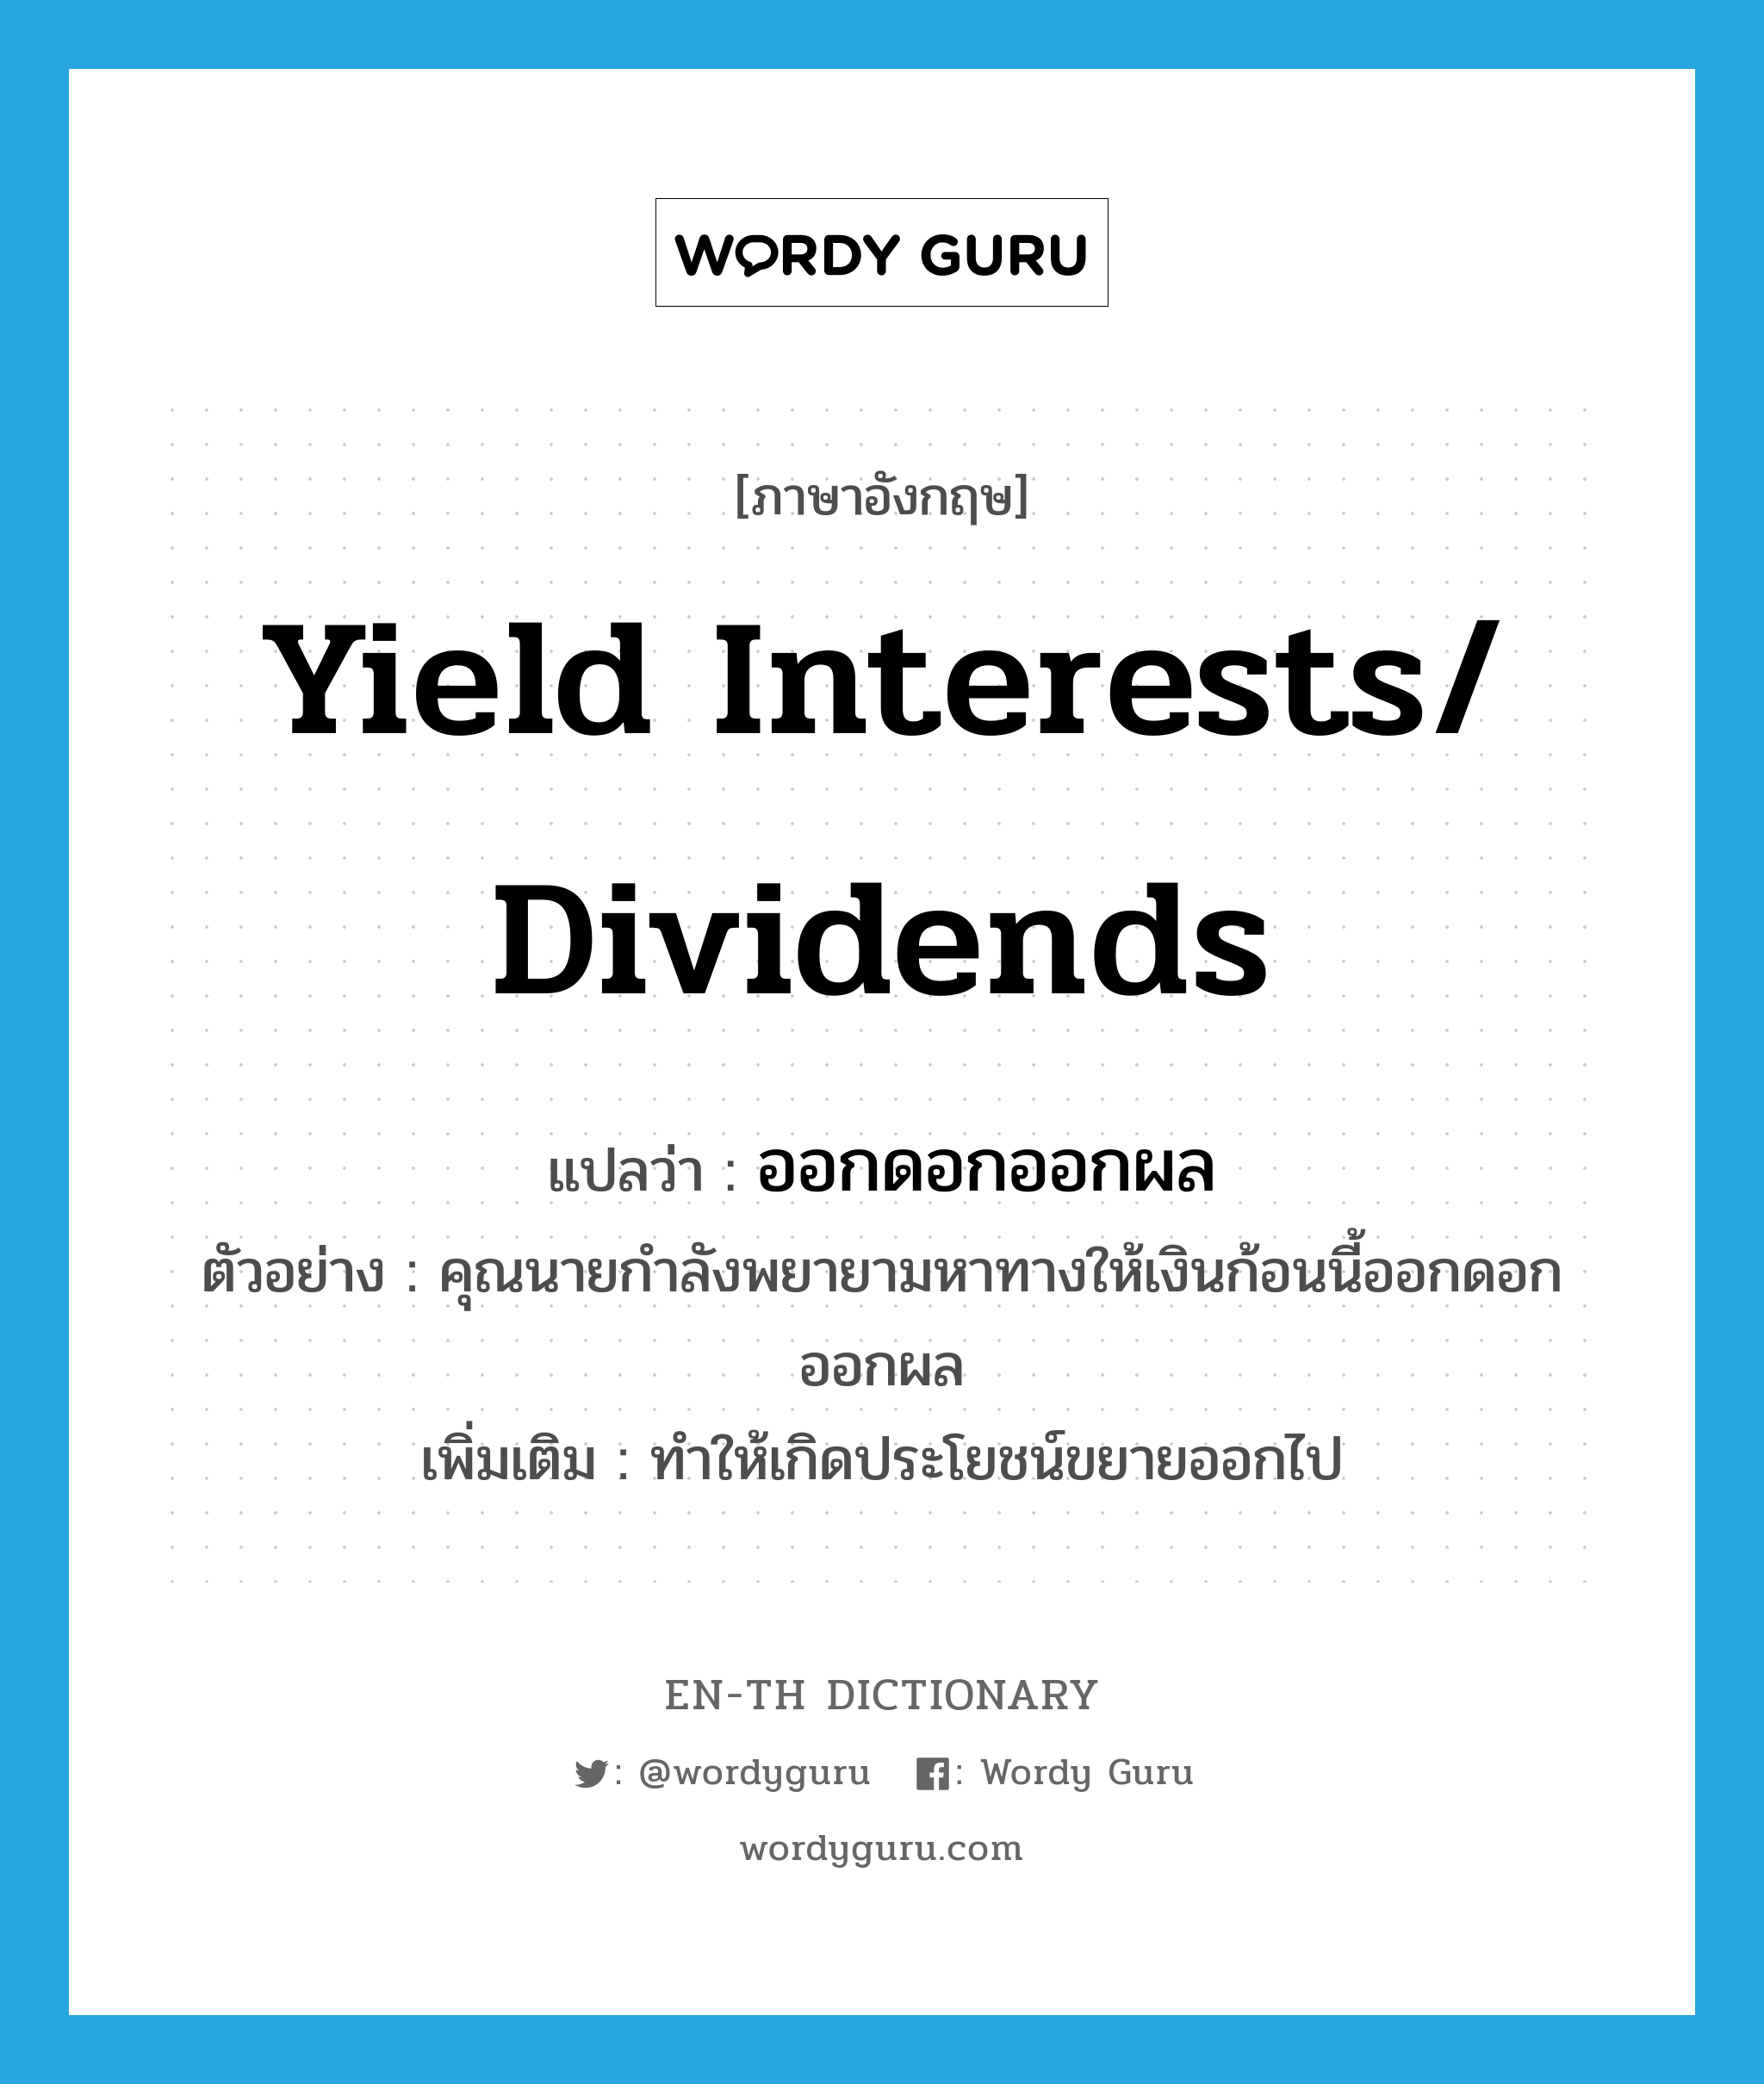 yield interests/ dividends แปลว่า?, คำศัพท์ภาษาอังกฤษ yield interests/ dividends แปลว่า ออกดอกออกผล ประเภท V ตัวอย่าง คุณนายกำลังพยายามหาทางให้เงินก้อนนี้ออกดอกออกผล เพิ่มเติม ทำให้เกิดประโยชน์ขยายออกไป หมวด V